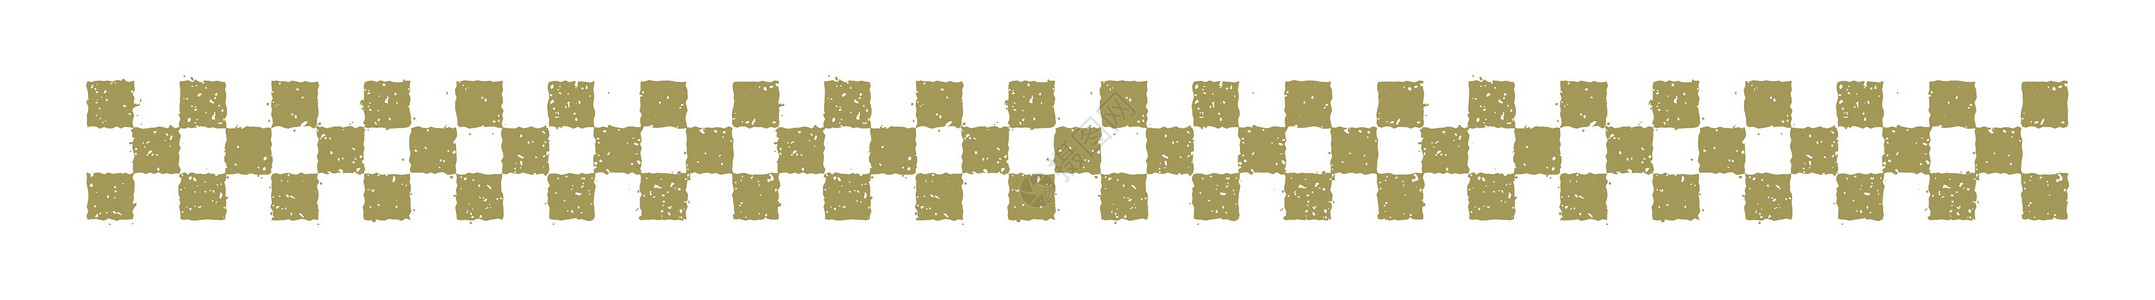 一年就一次新年卡片邮票插图方格图案正方形格子材料形象符号流行音乐金子载体植物幸运符插画